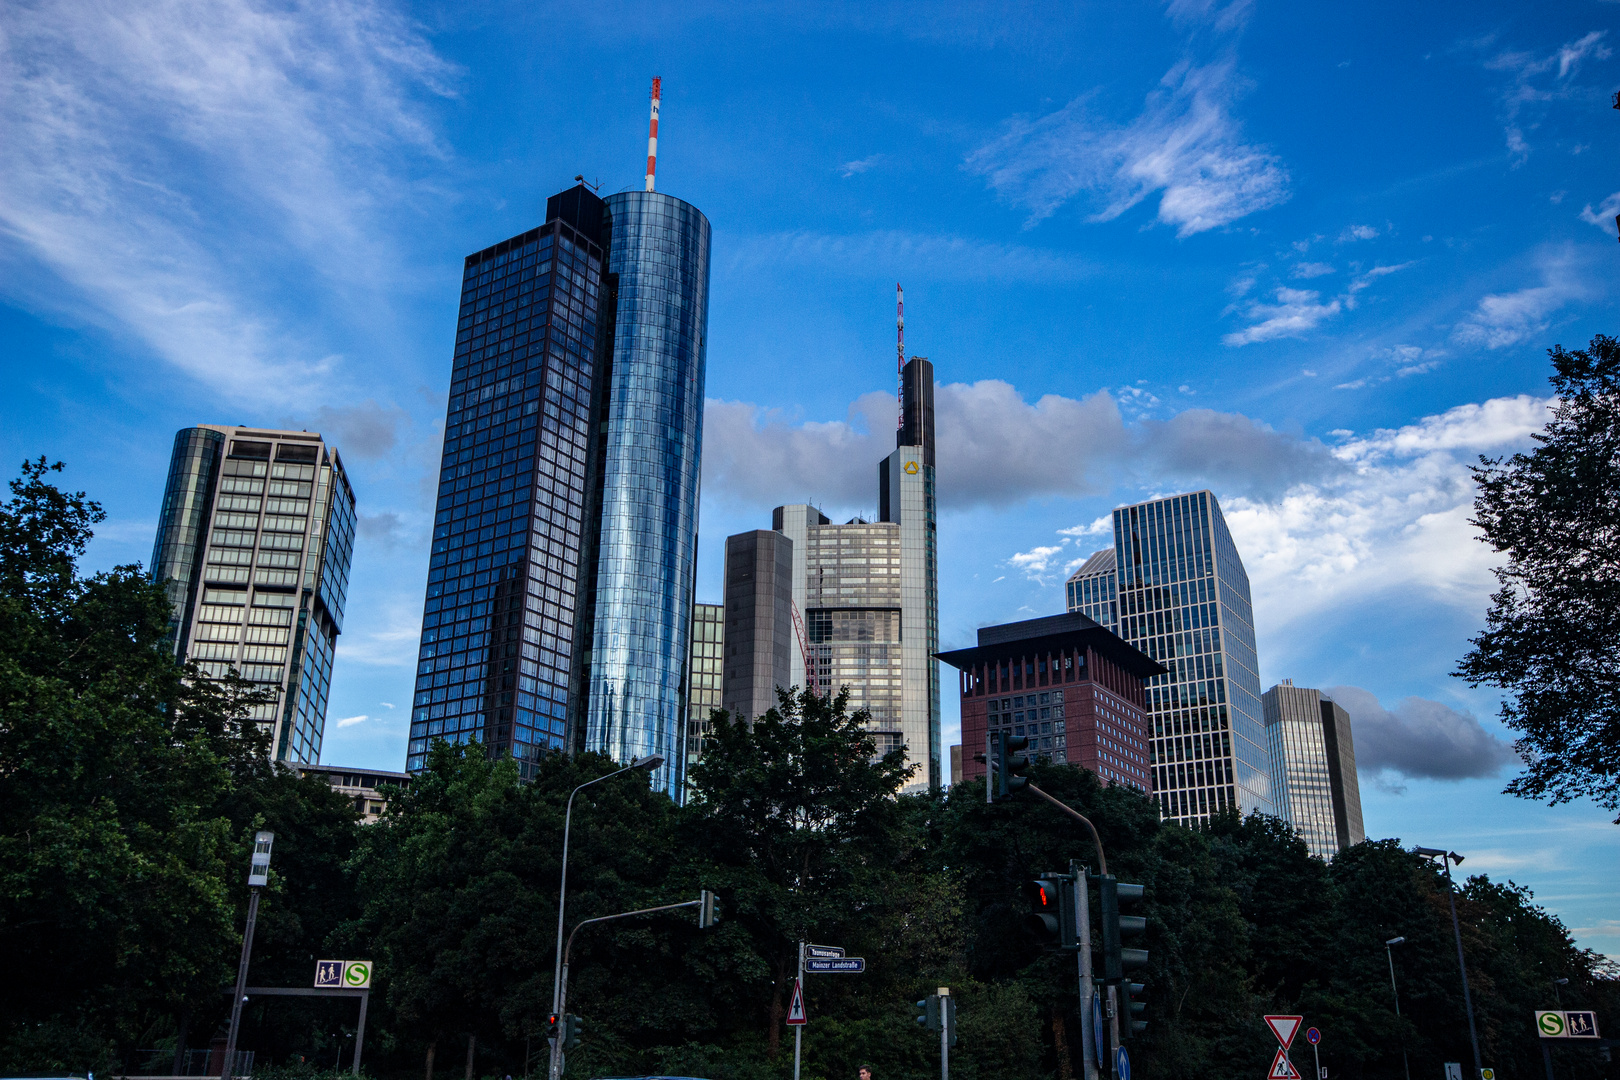 Skyline Frankfurt Main